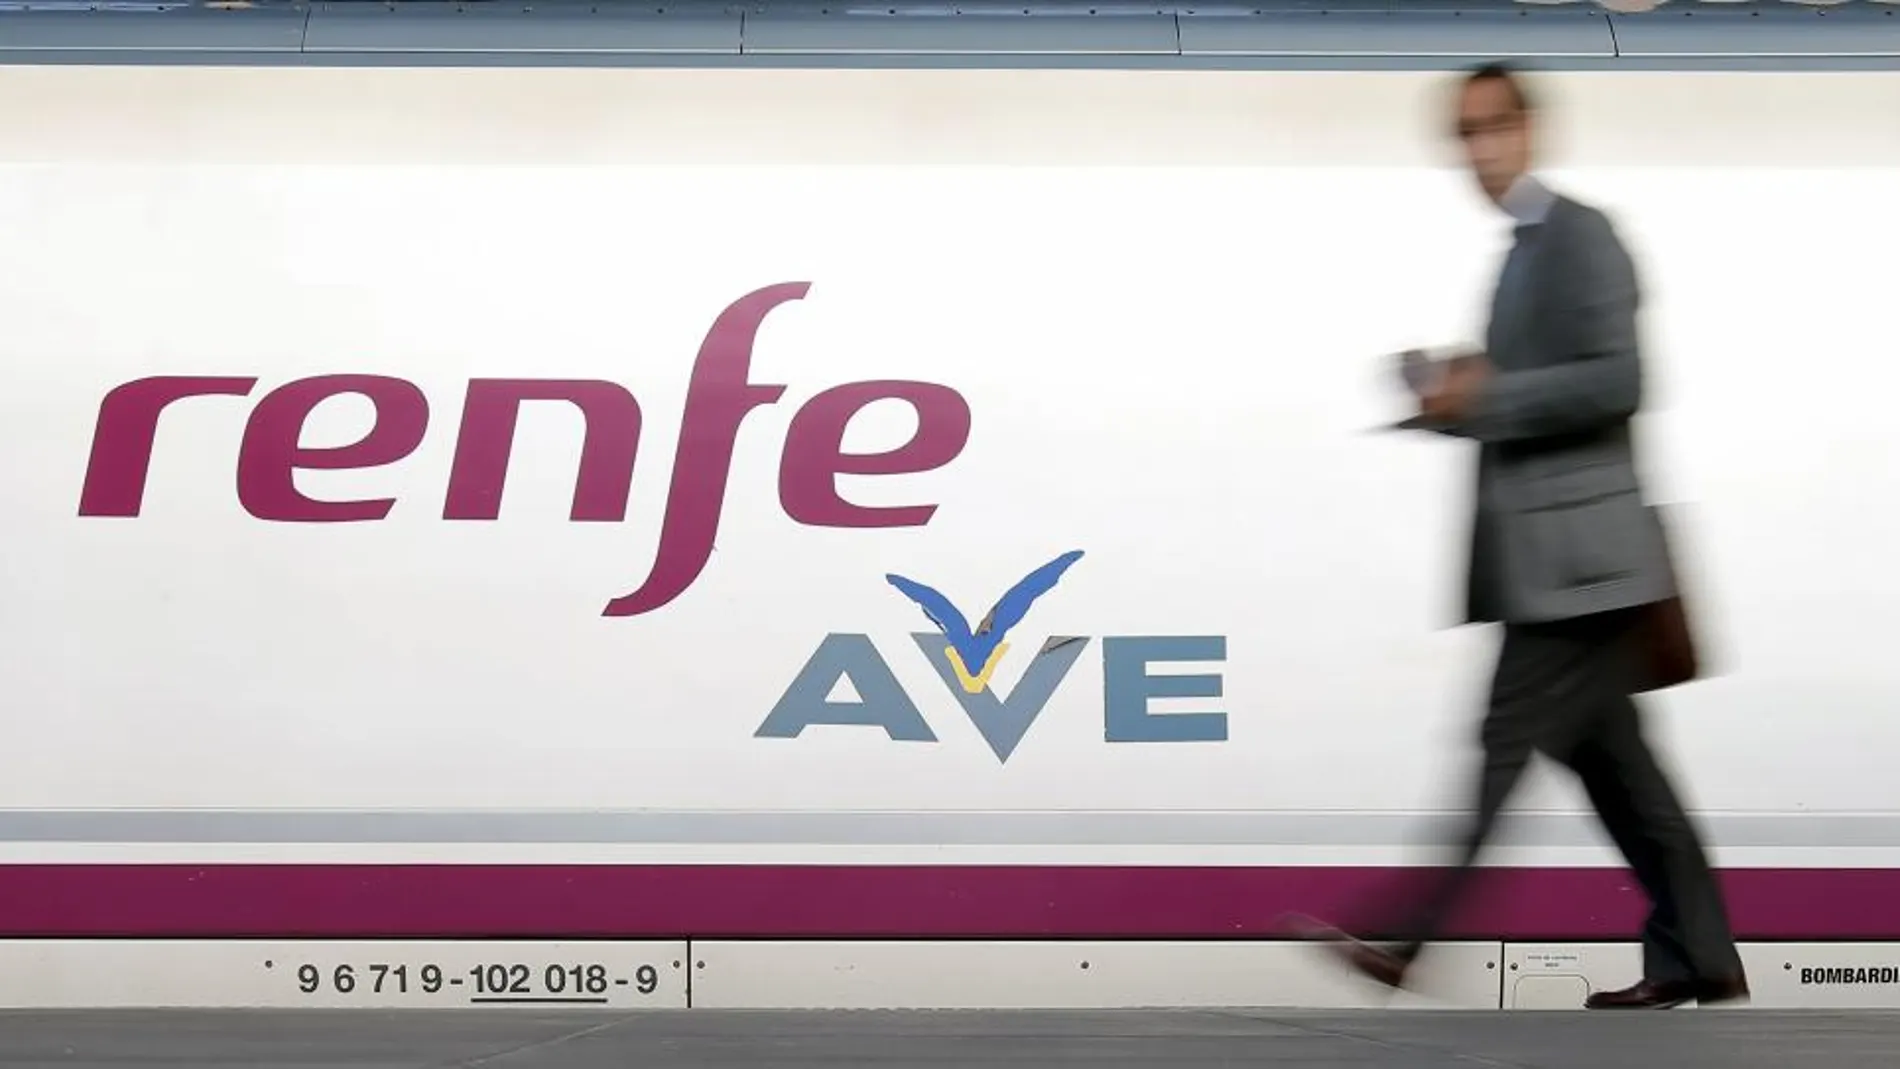 Los trenes AVE generaron 664,4 millones de euros en la primera mitad del año, un 4,3% más